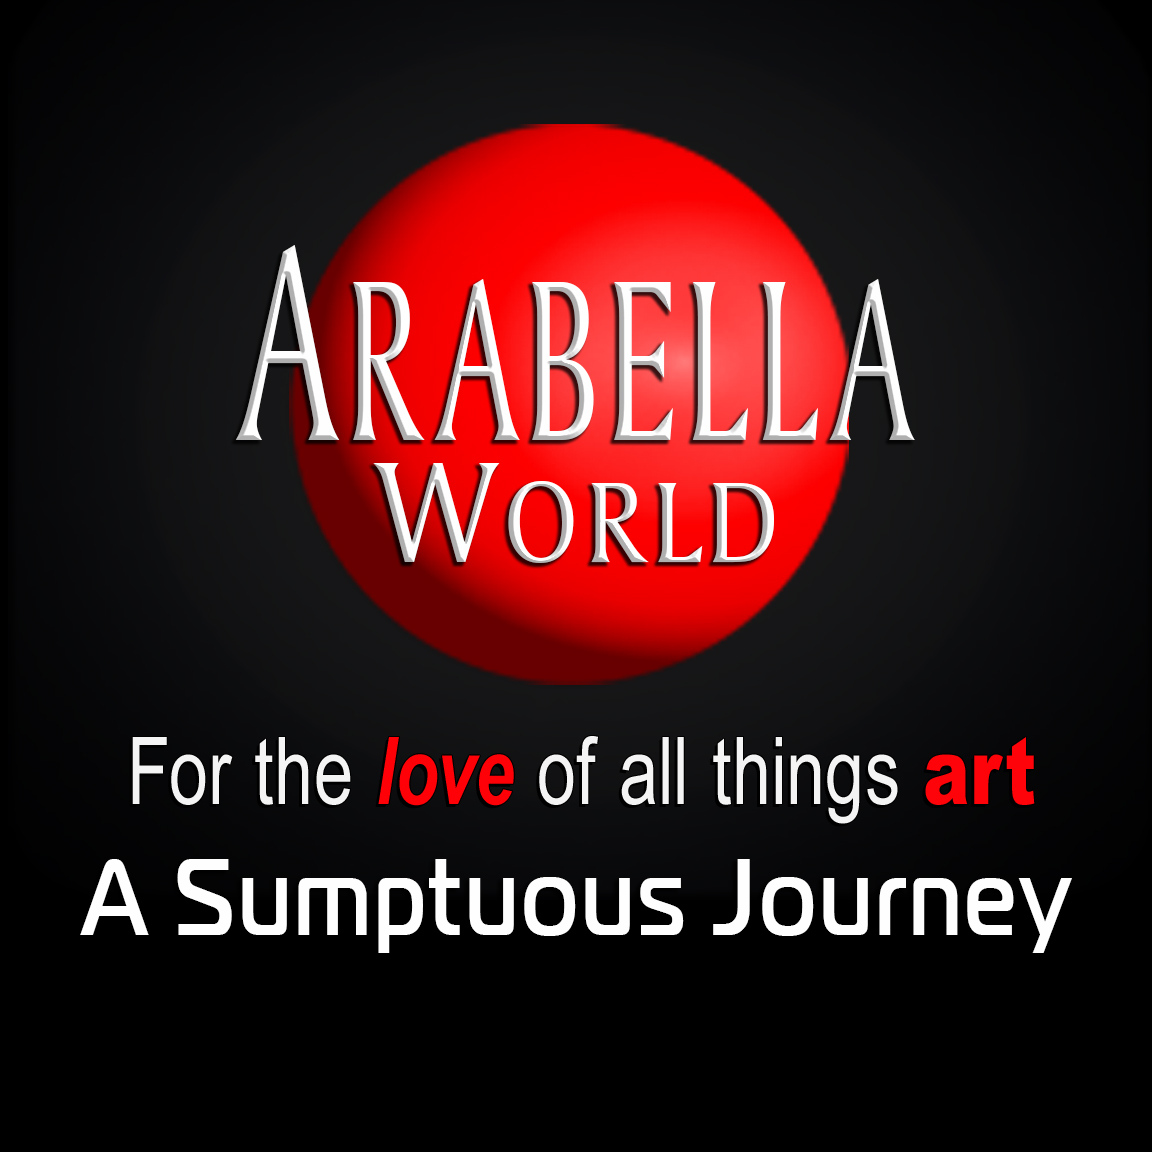 ARABELLA - A Sumptuous Journey